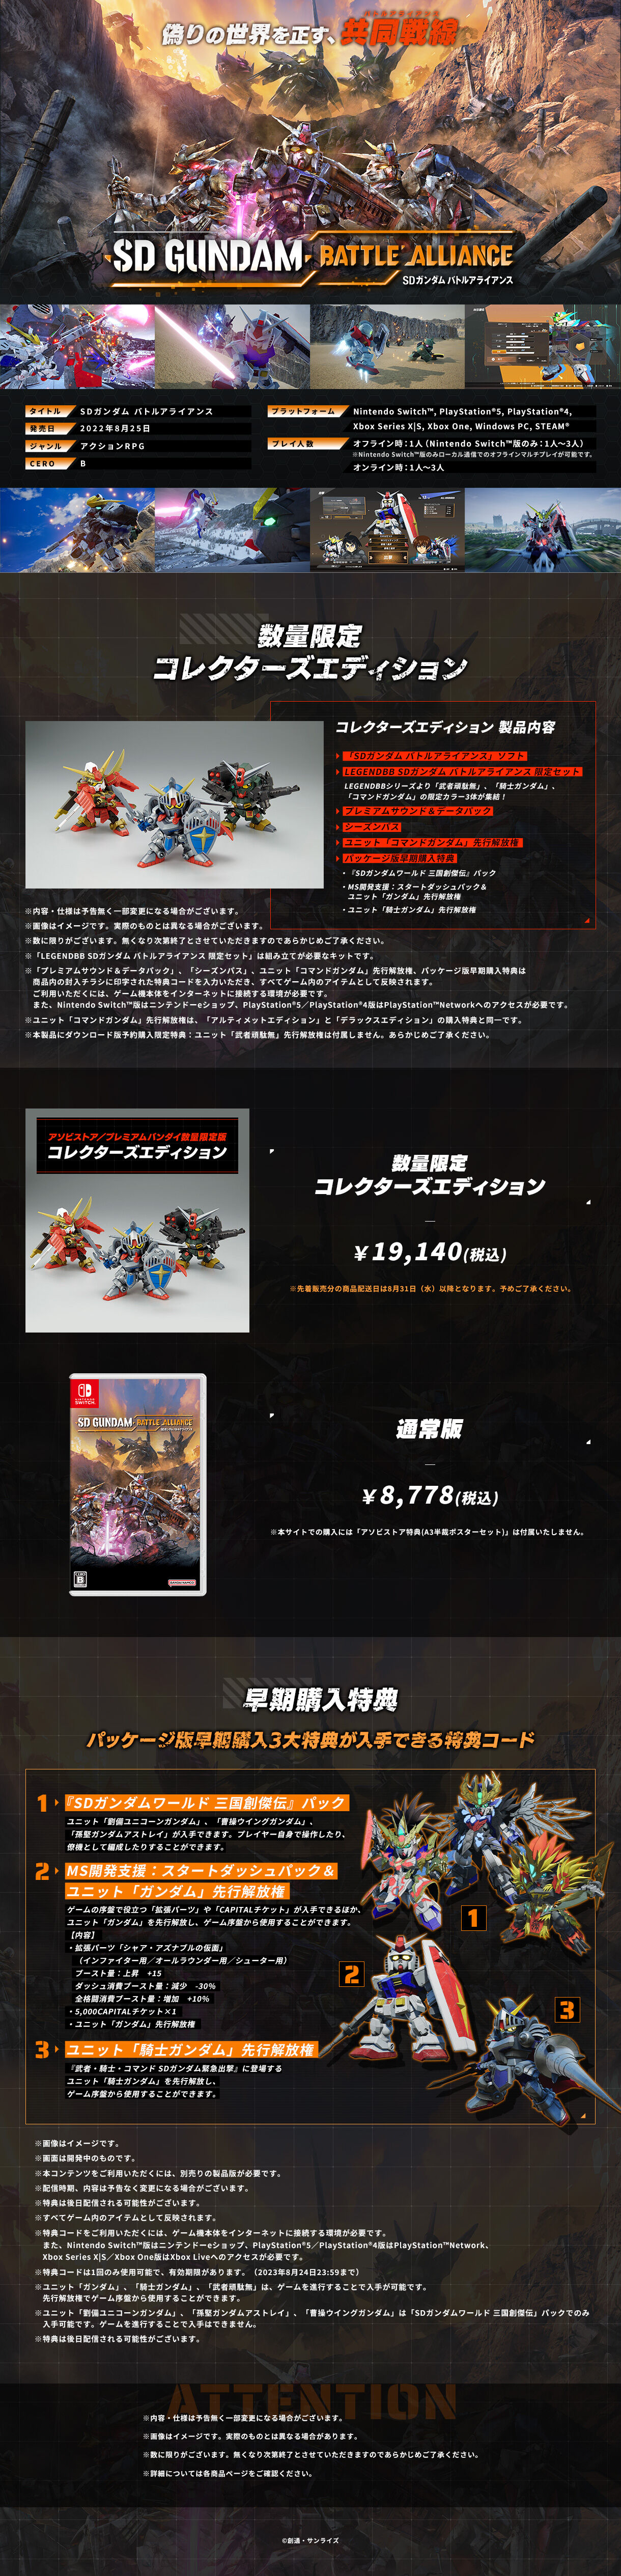 Nintendo Switch(TM)「SDガンダム バトルアライアンス」コレクターズ